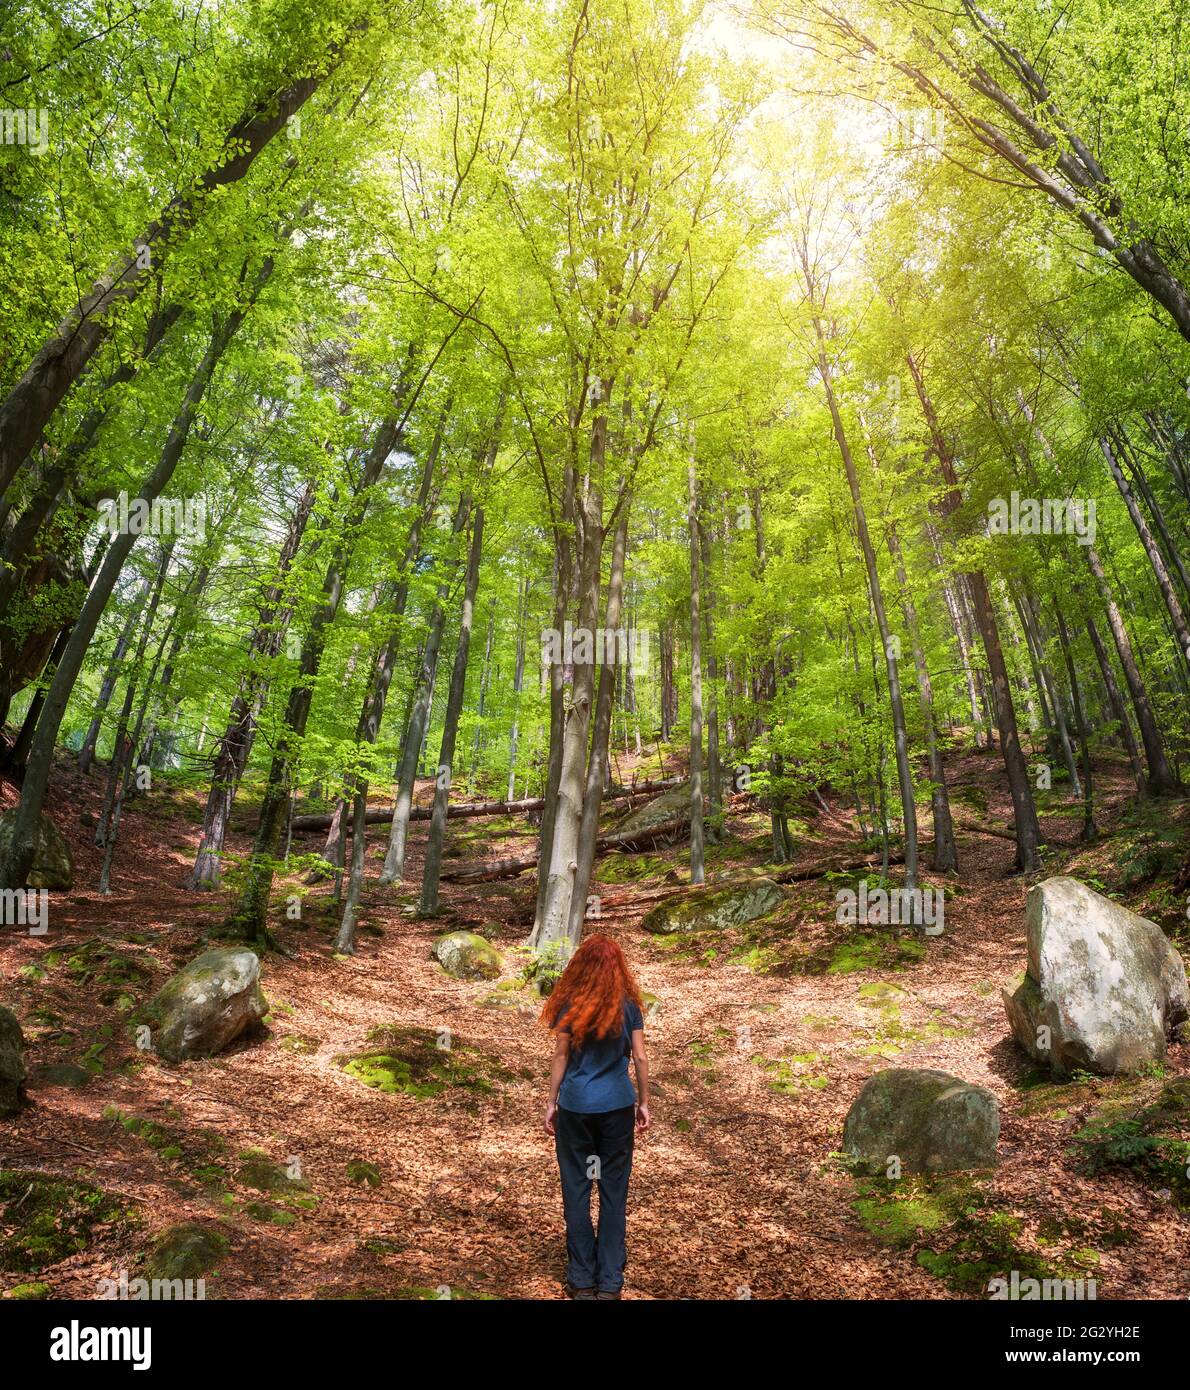 Rothaarige junge Frau, die im grünen Frühlingswald steht und die Aussicht genießt. Konzept des aktiven Lebens. Stockfoto